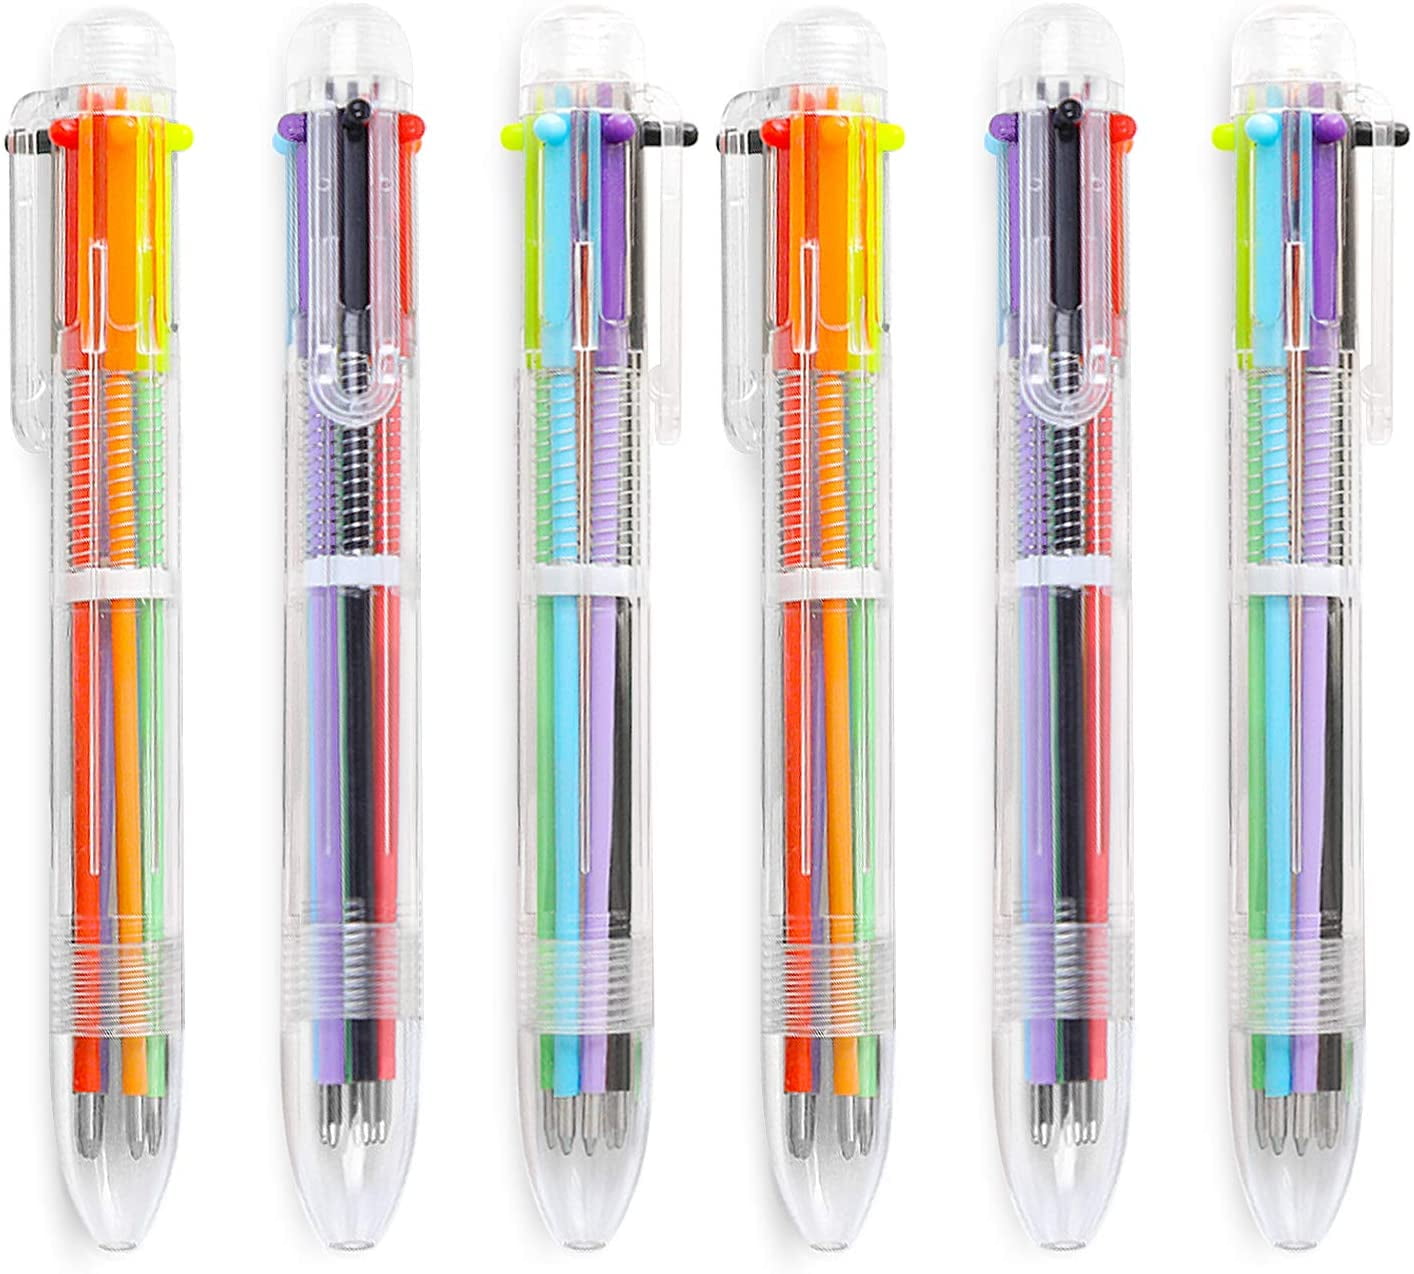 Pinkgarden Lot de 6 stylos à bille rétractables multicolores, 10 en 1